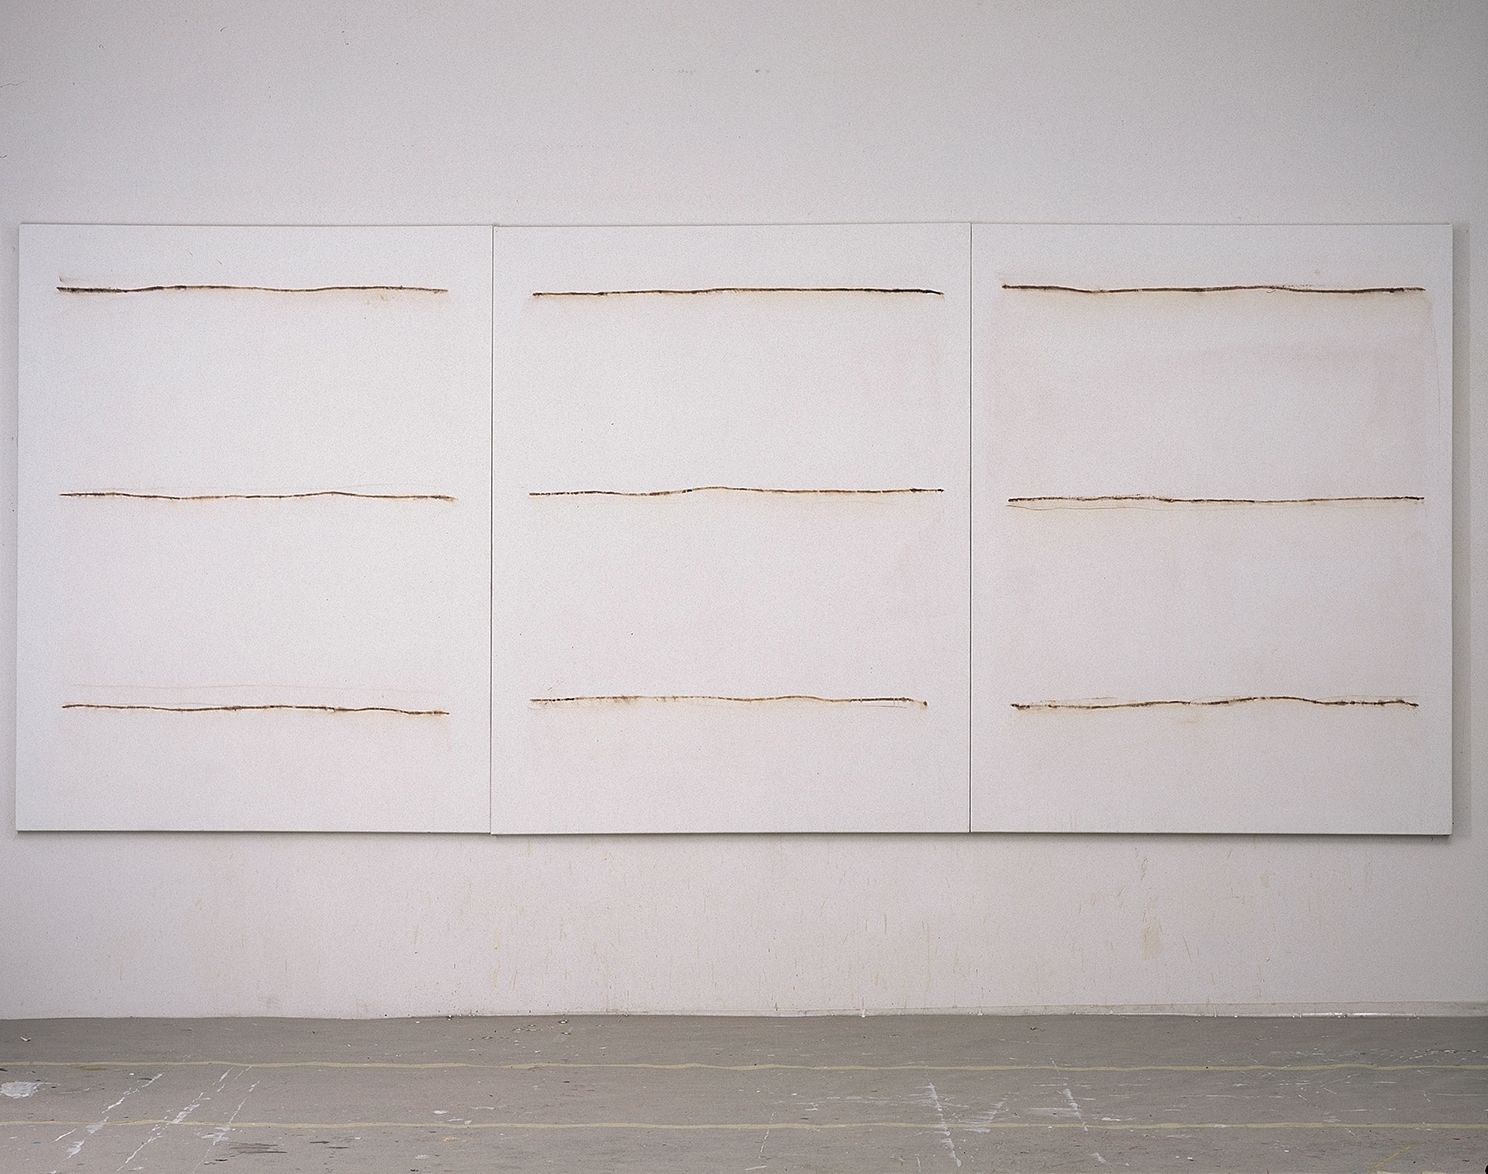 Lilo Rinkens, Drei mal drei Linien, 1999, Acryl und Tusche auf Leinwand, 180 x 420 cm